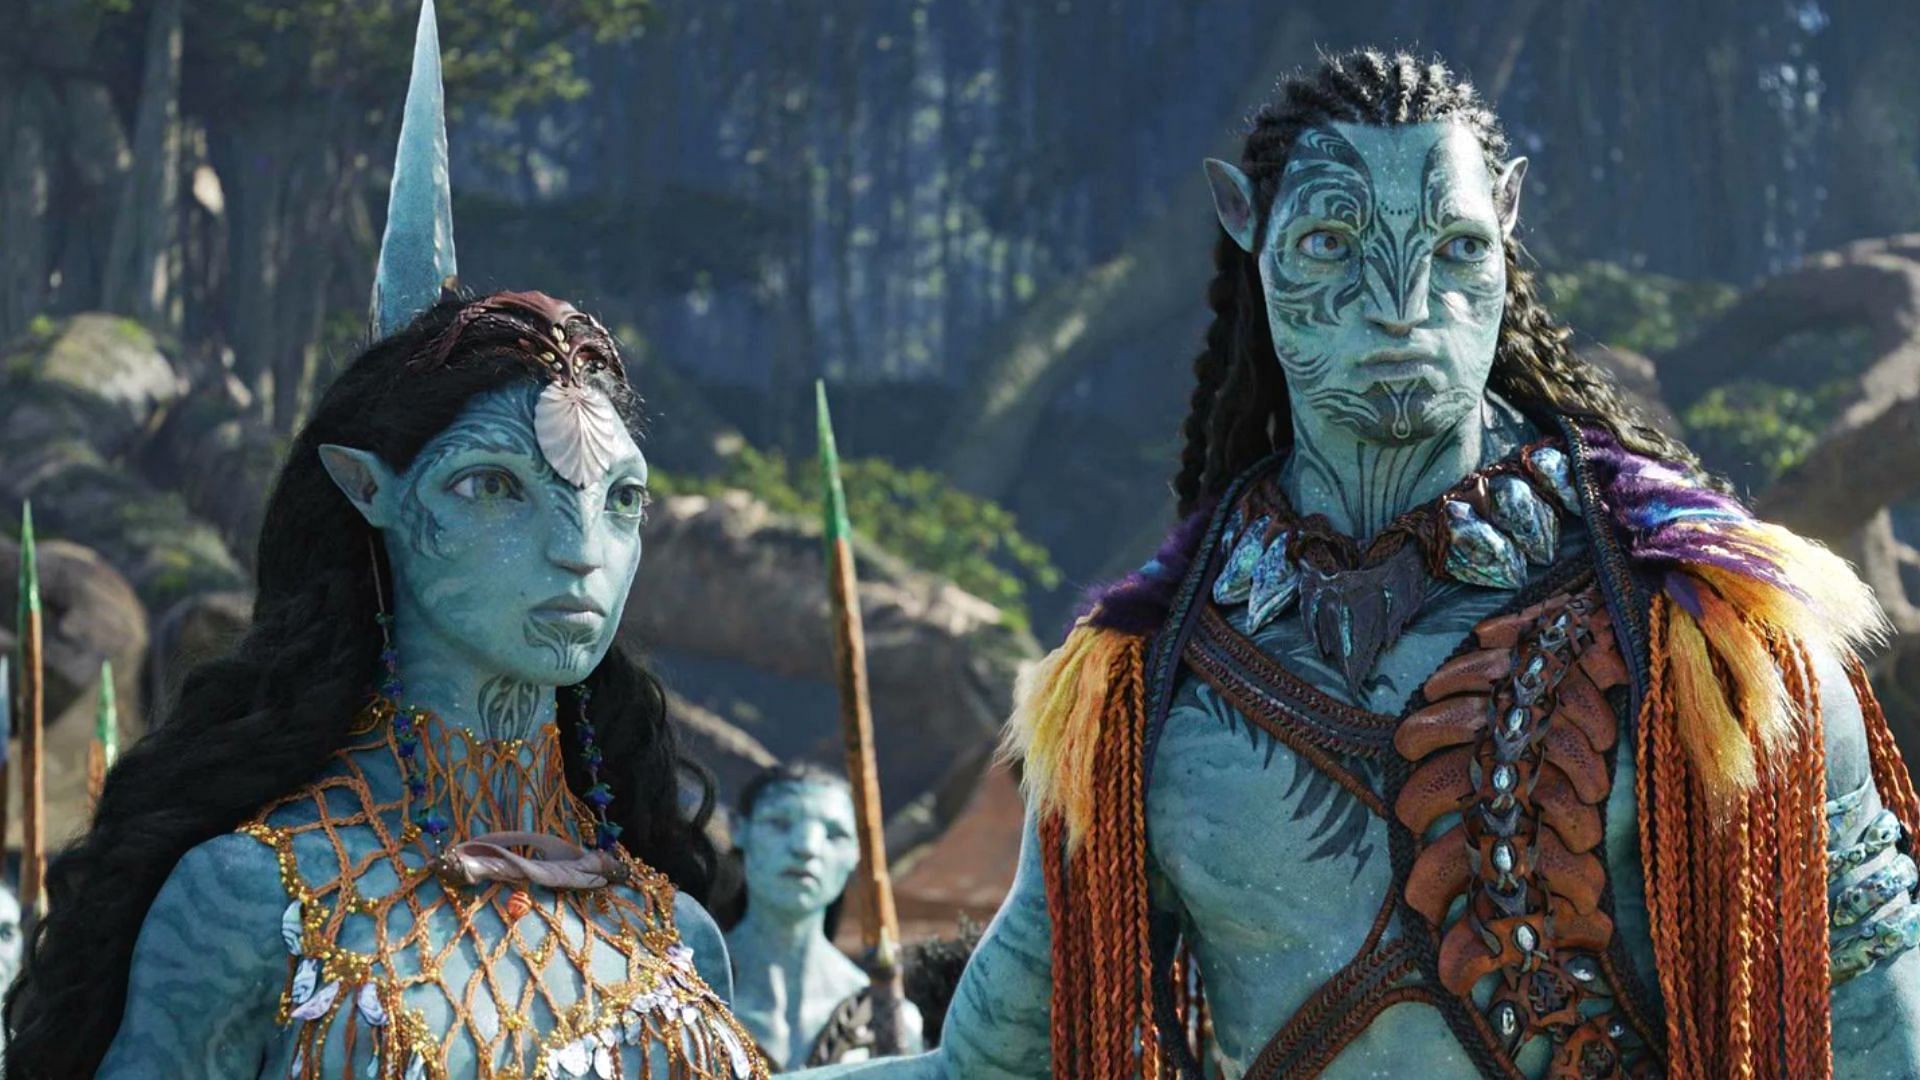 Avatar: The Way of Water sắp ra mắt và hứa hẹn sẽ mang đến cho người xem những trải nghiệm thú vị hơn bao giờ hết! Và nếu bạn muốn xem phim này mà không cần phải đến rạp, hãy truy cập vào các trang web xem phim trực tuyến. Chỉ cần tìm kiếm \